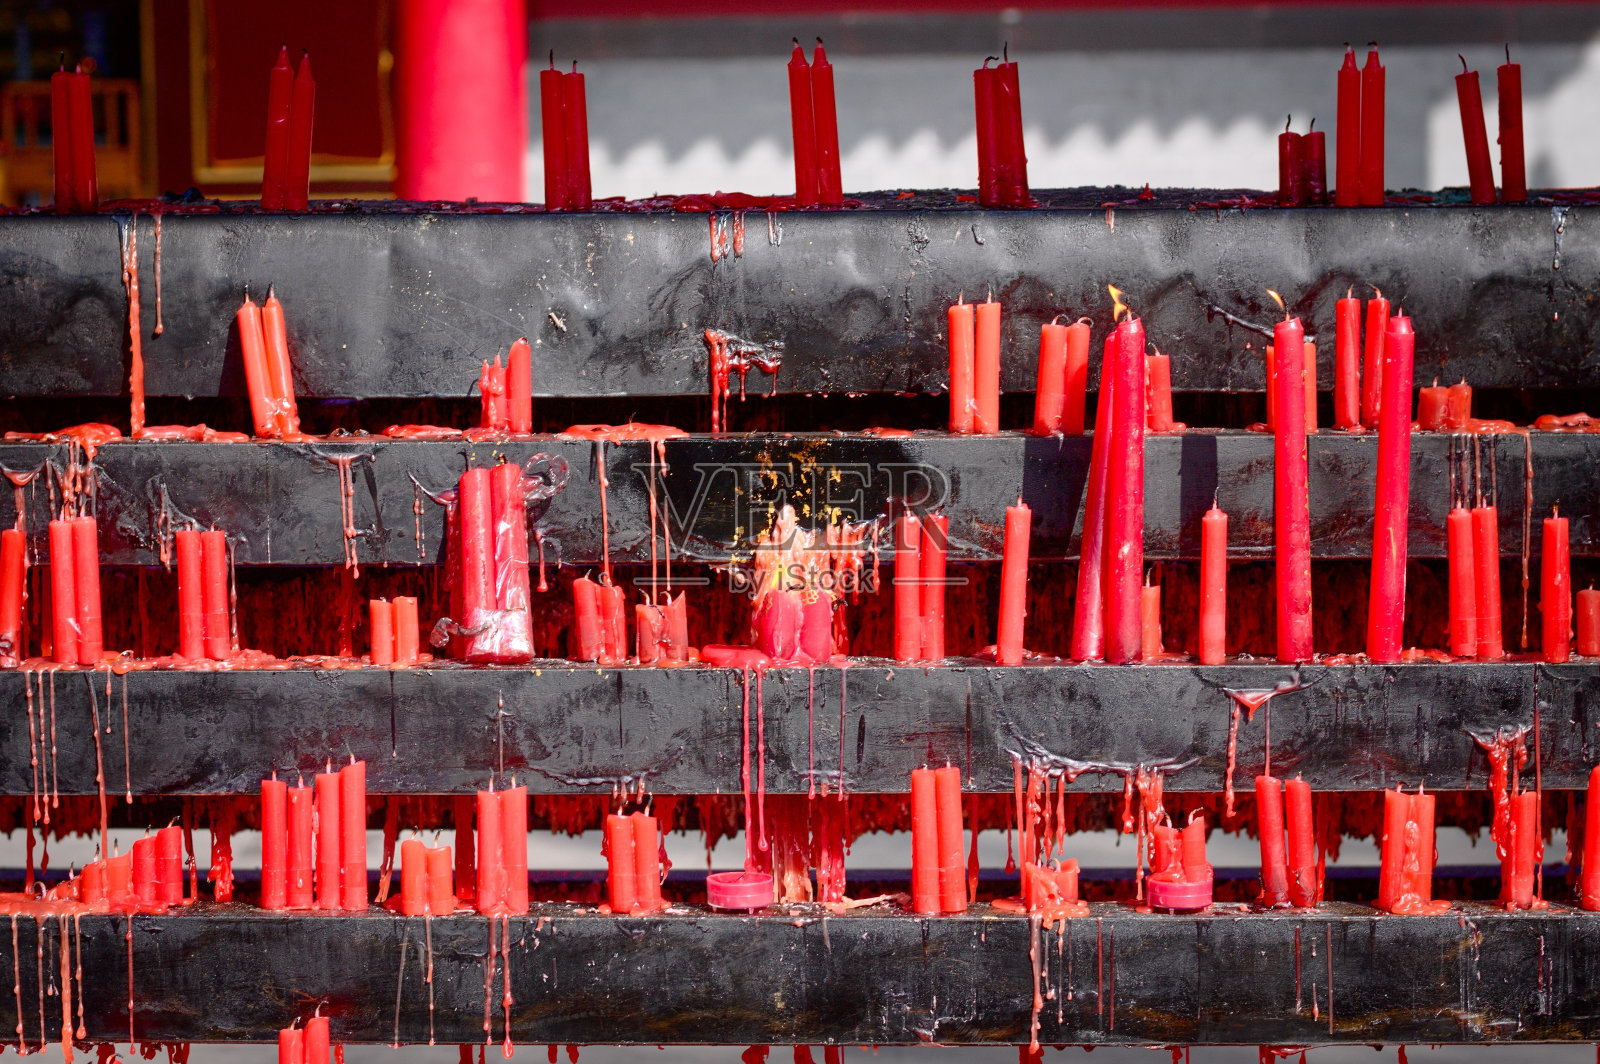 佛教寺庙中的红烛(中国云南昆明)照片摄影图片